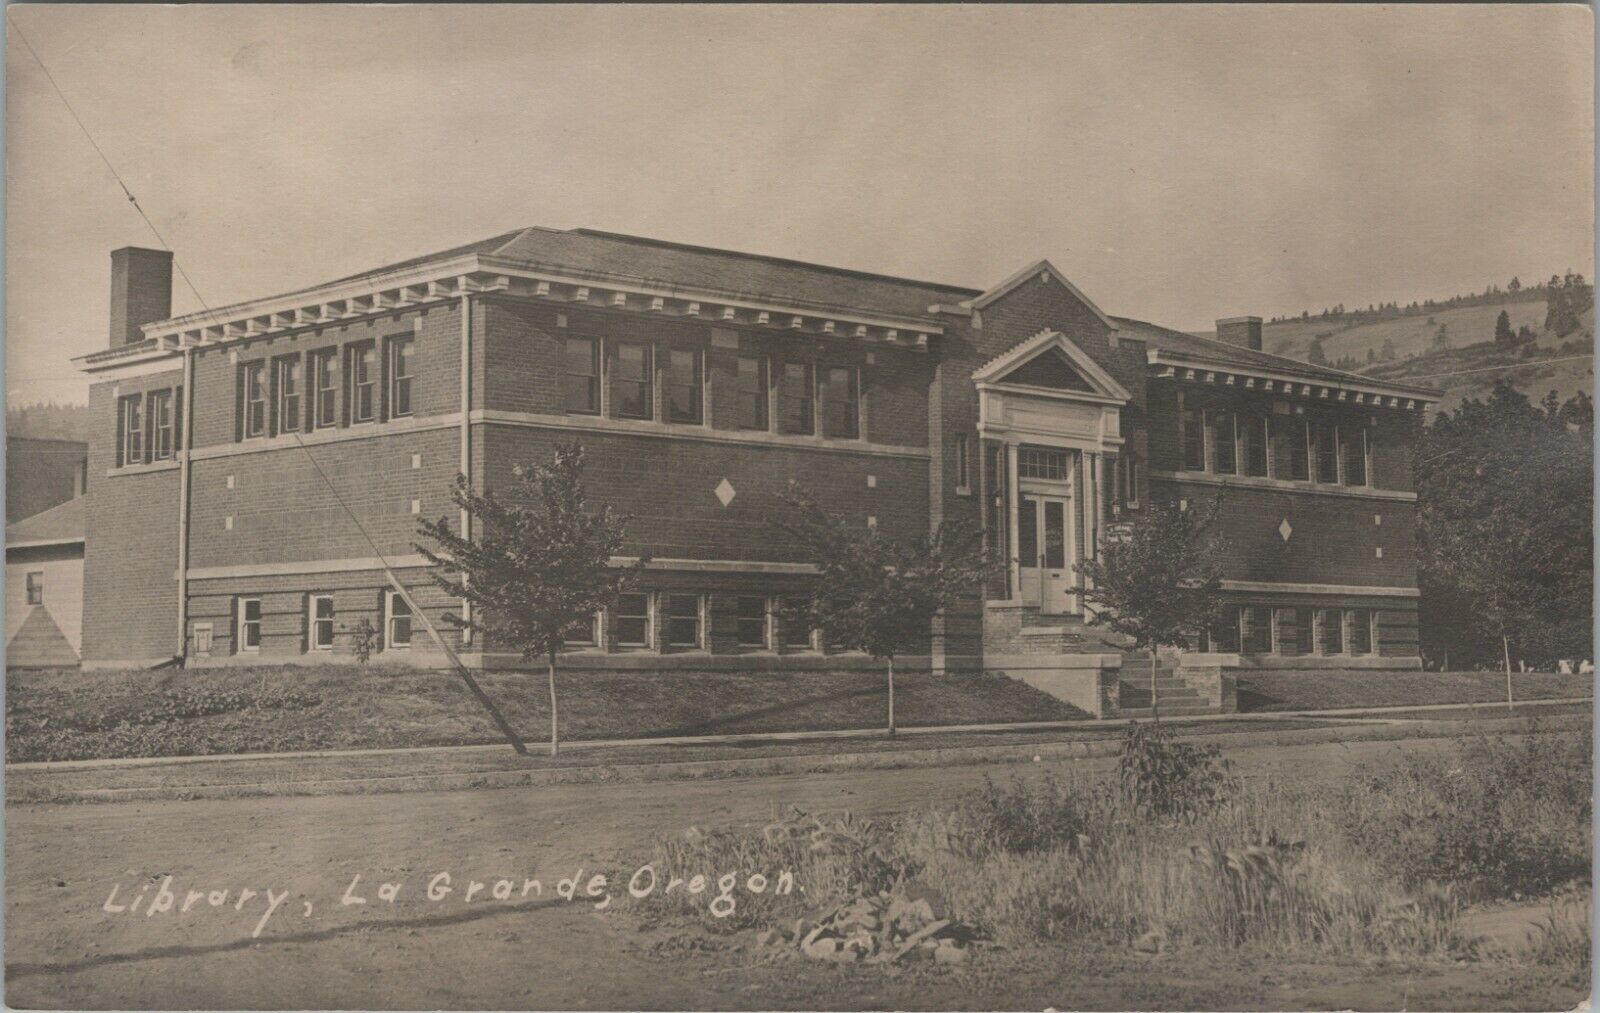 RPPC Carnegie Public Library La Grande OR Oregon 1920s photo postcard G90